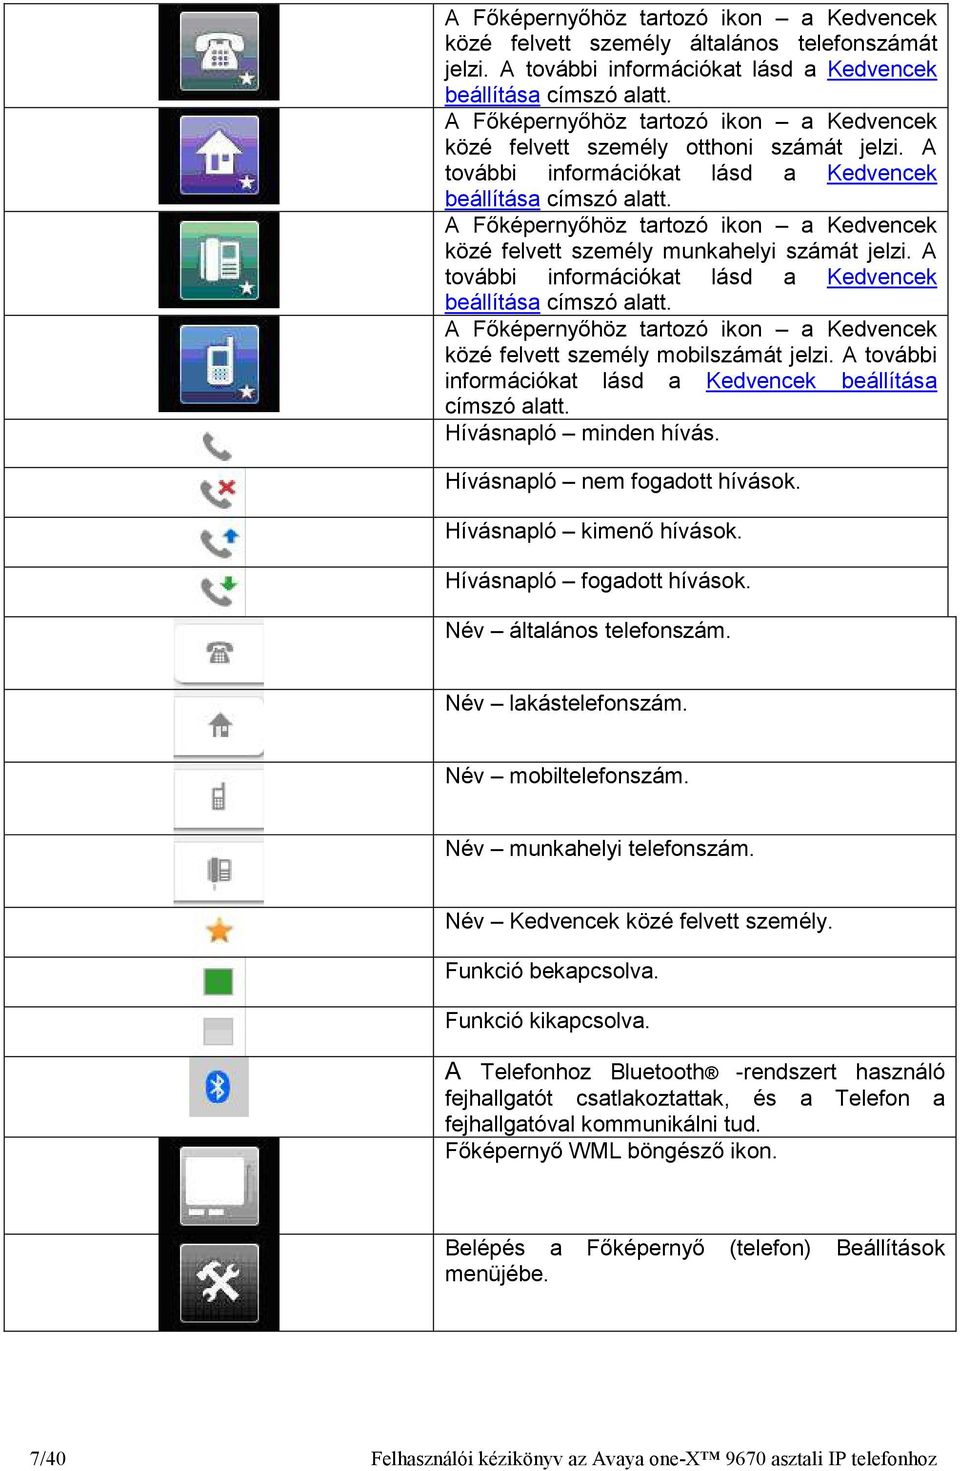 A Fıképernyıhöz tartozó ikon a Kedvencek közé felvett személy munkahelyi számát jelzi. A további információkat lásd a Kedvencek beállítása címszó alatt.